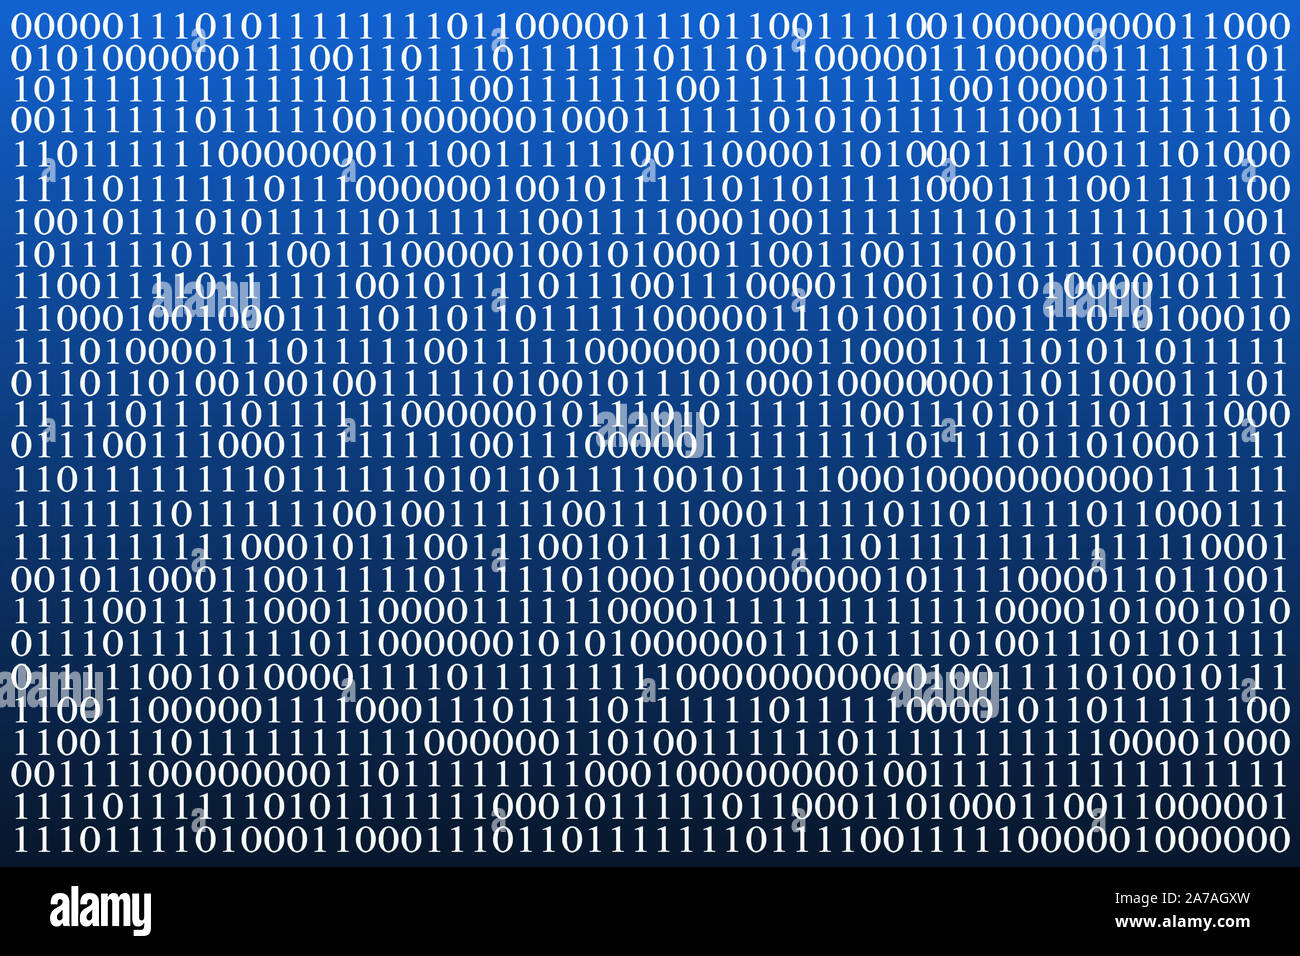 Hãy xem hình ảnh mã nhị phân xanh nền để tìm hiểu về mã hóa điện tử và cách chúng hoạt động trong các thiết bị điện tử của bạn. Mã nhị phân xanh nền có thể thú vị và hấp dẫn khi bạn khám phá sự kỳ diệu của công nghệ này.